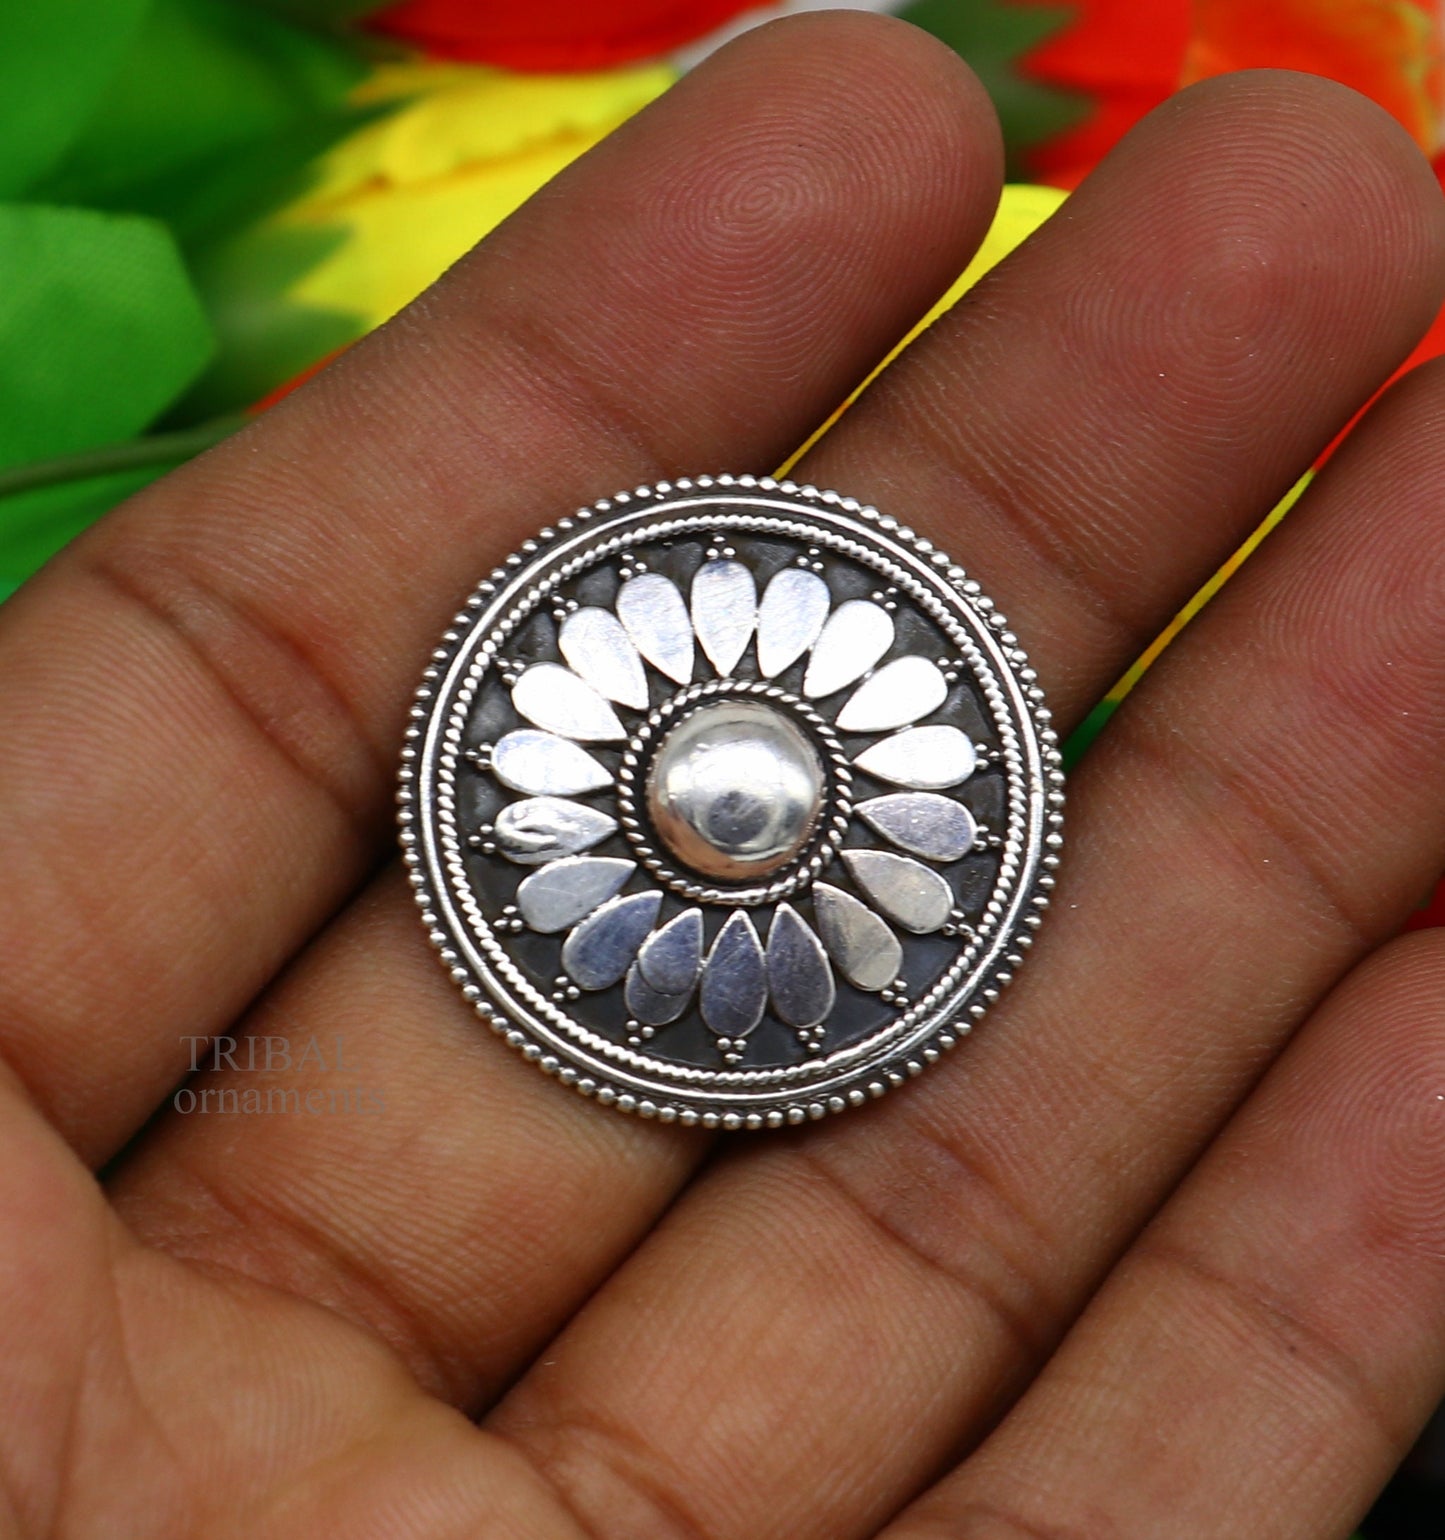 floral design 925 sterling solid silver fabulous craftsmanship vintage design tribal adjustable ring band for women Rajasthan India ring495